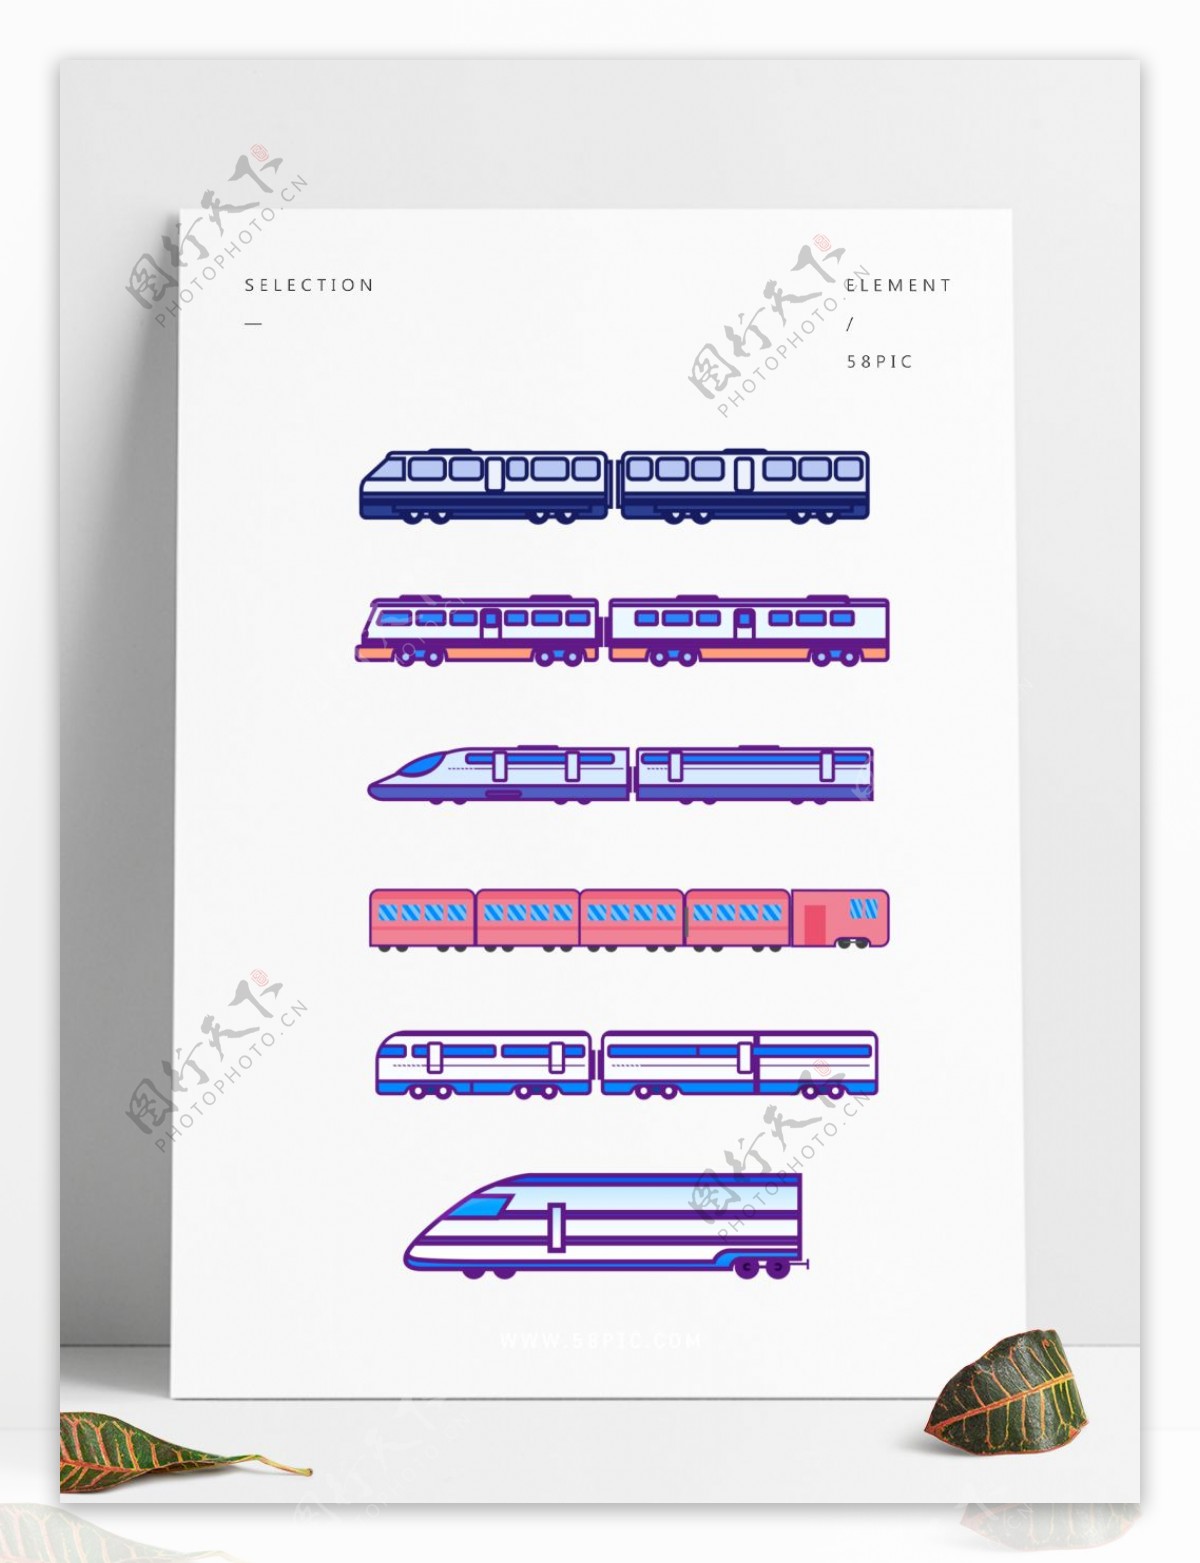 火车交通工具几何装饰图标iocn